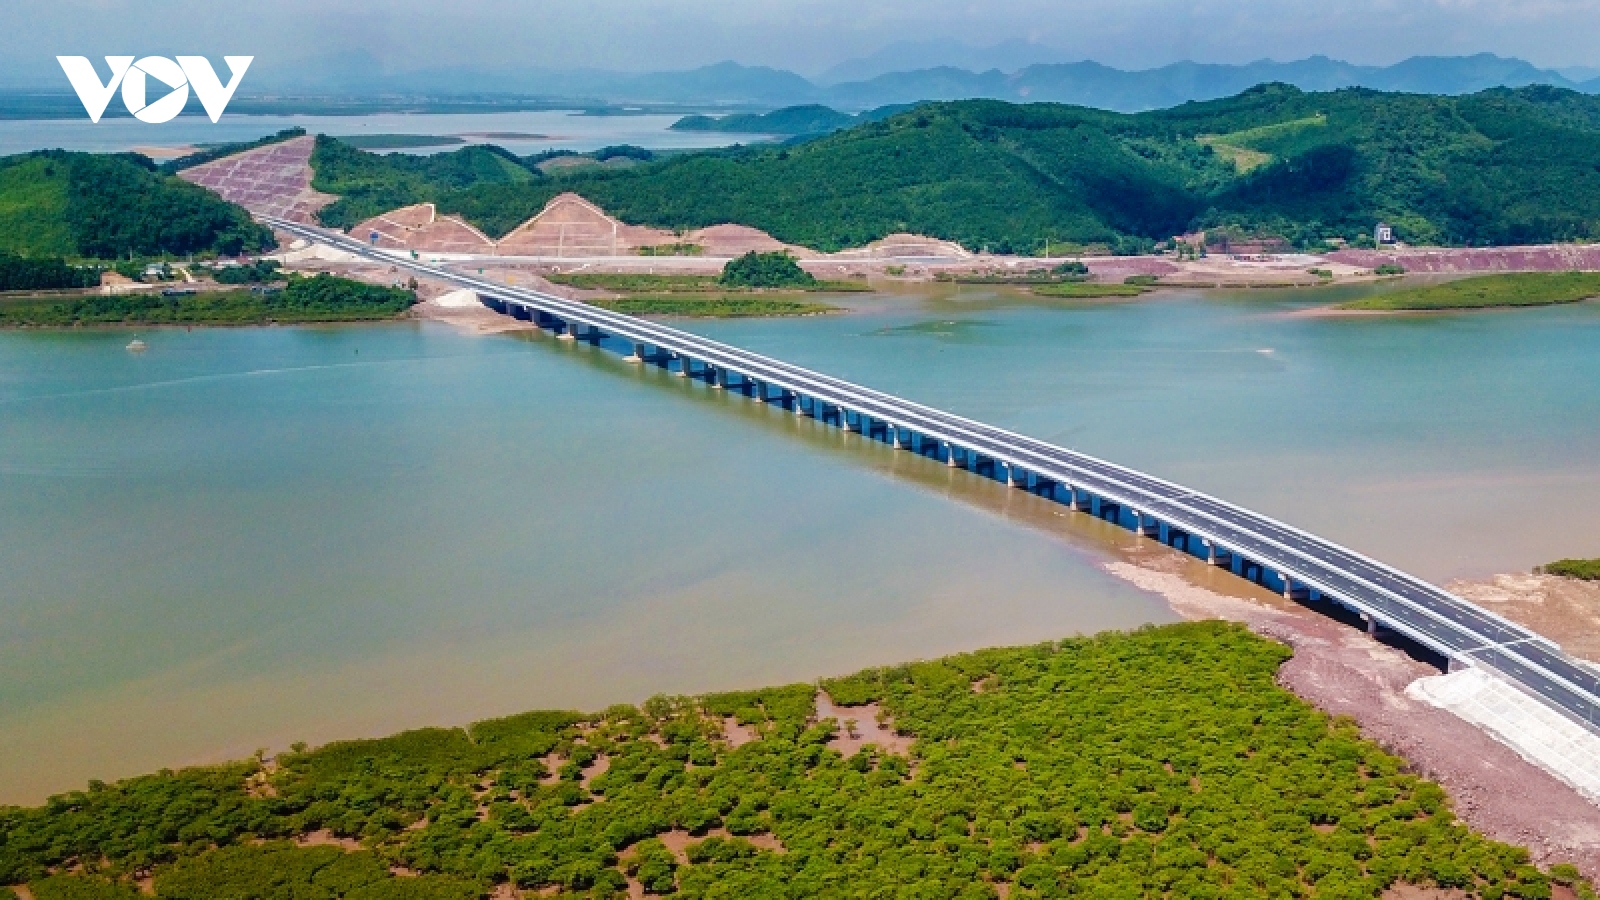 Khung cảnh hùng vĩ quanh cây cầu vượt biển dài nhất Quảng Ninh